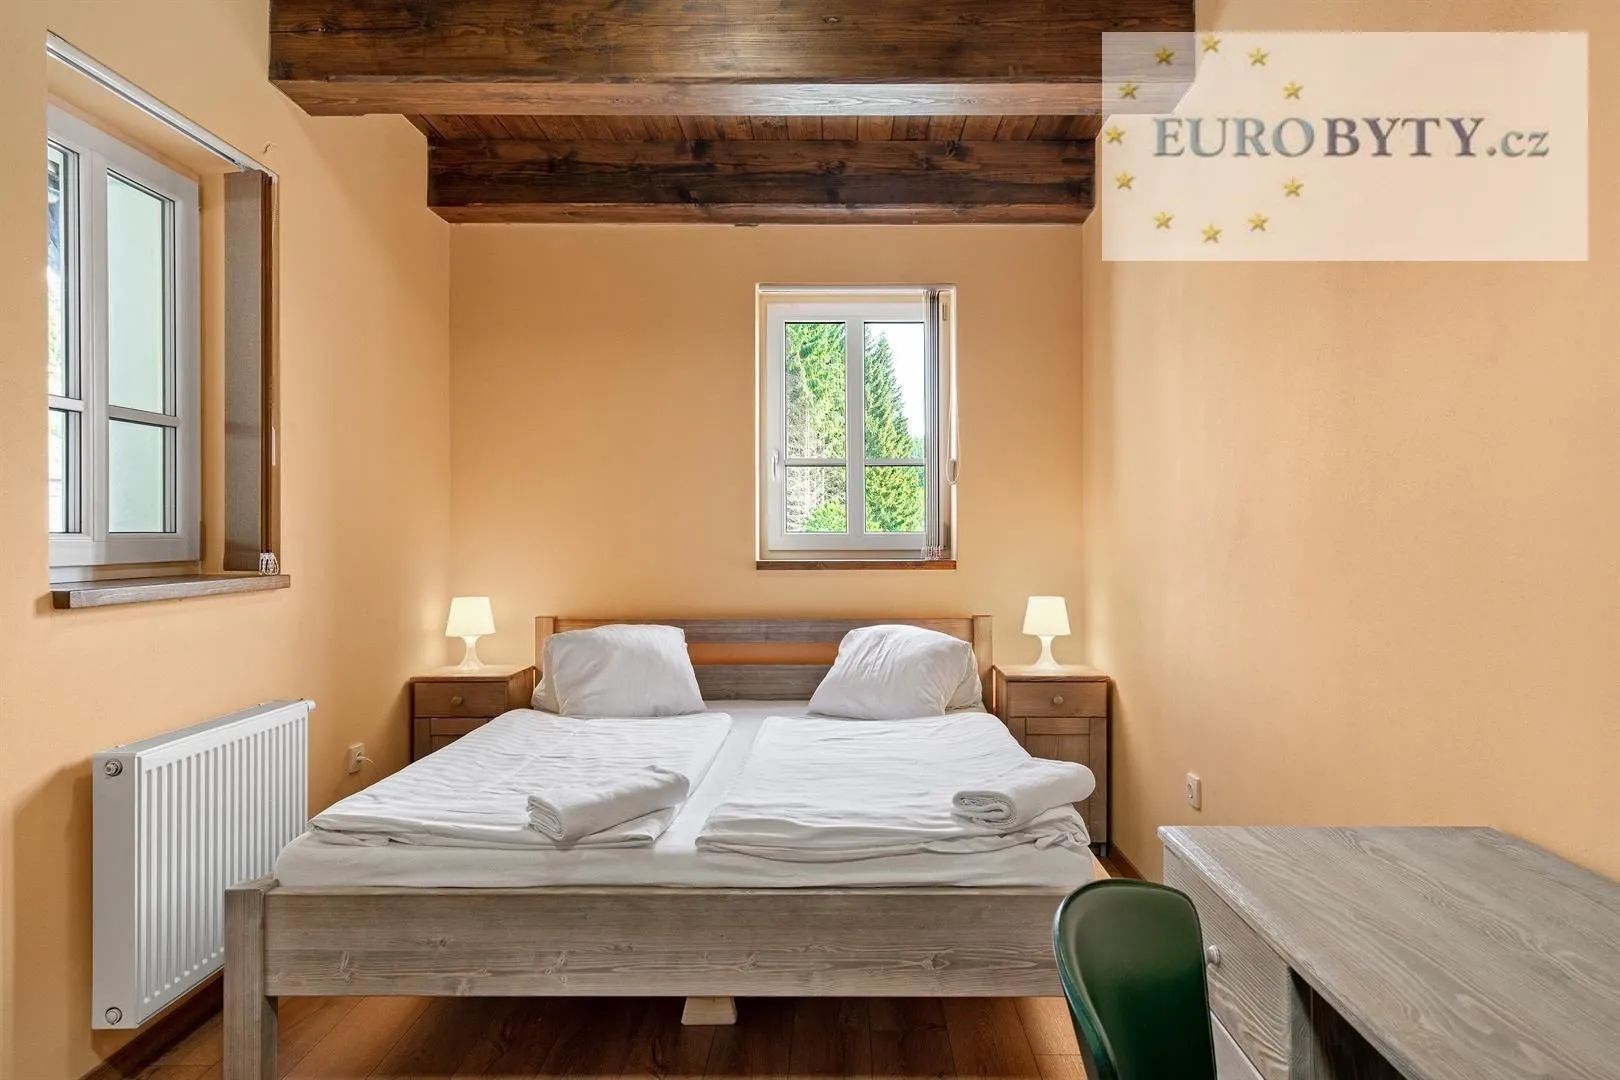 pokoj / ložnice s radiátor, trámový strop, dřevěná podlaha, a přirozené světlo